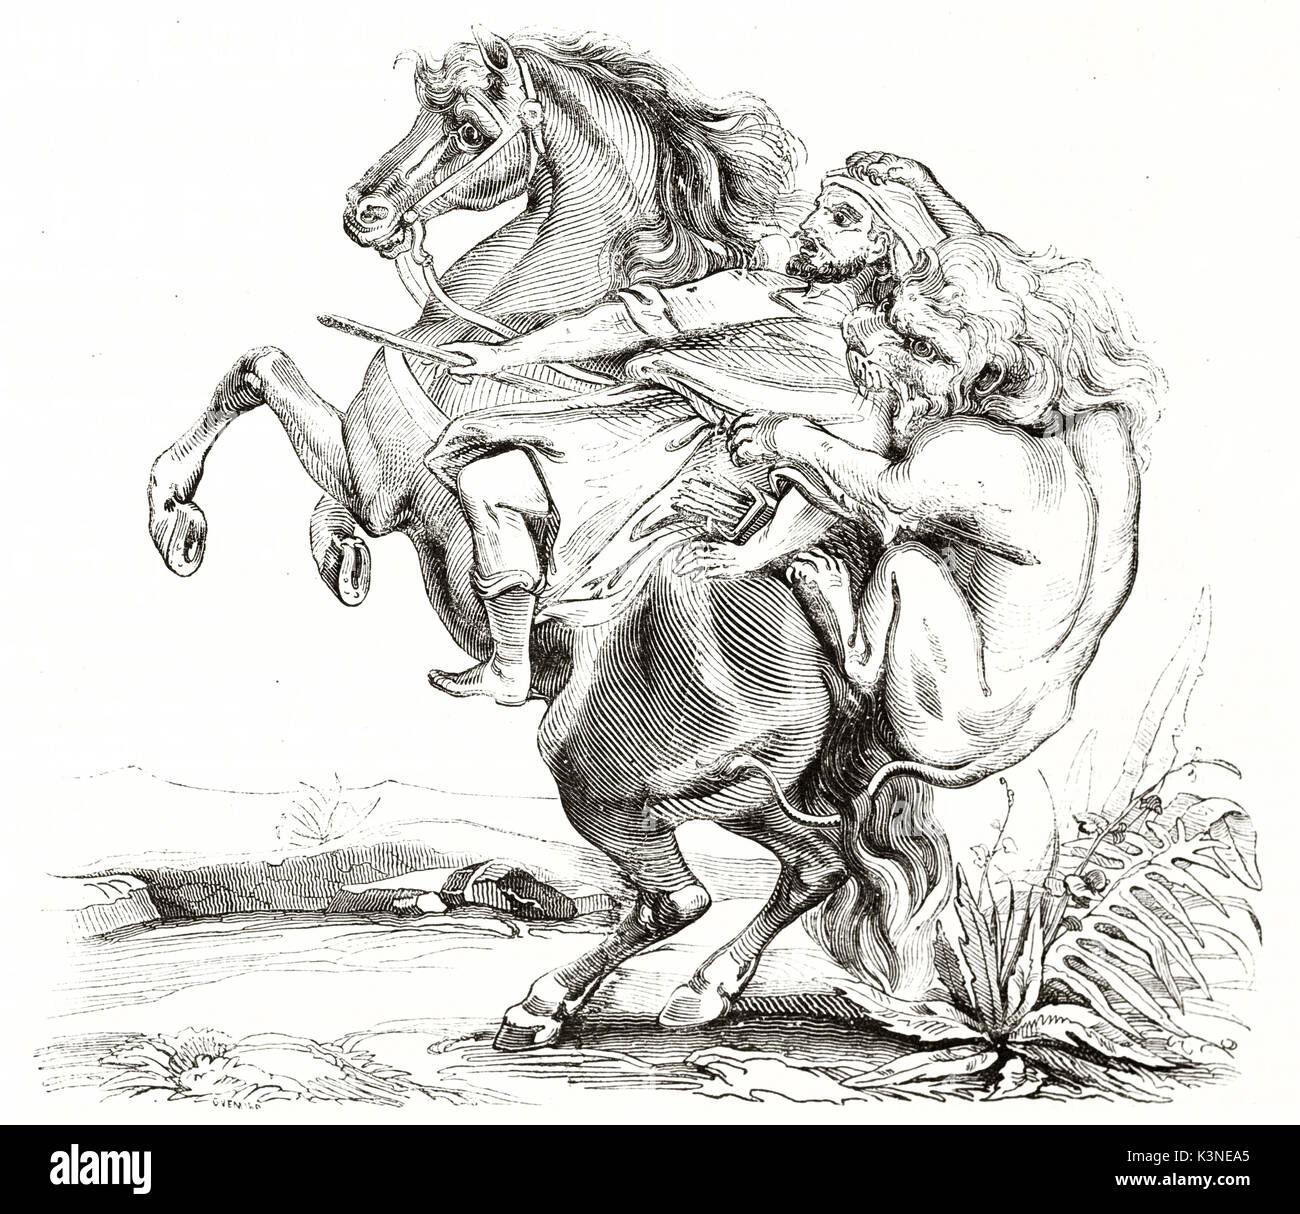 Lion cruelle attaque son chasseur sur son dos comme une embuscade faisant son cheval cabré jusqu'peur. Ancienne illustration détaillée par auteur non identifié publié le magasin pittoresque Paris 1839 Banque D'Images